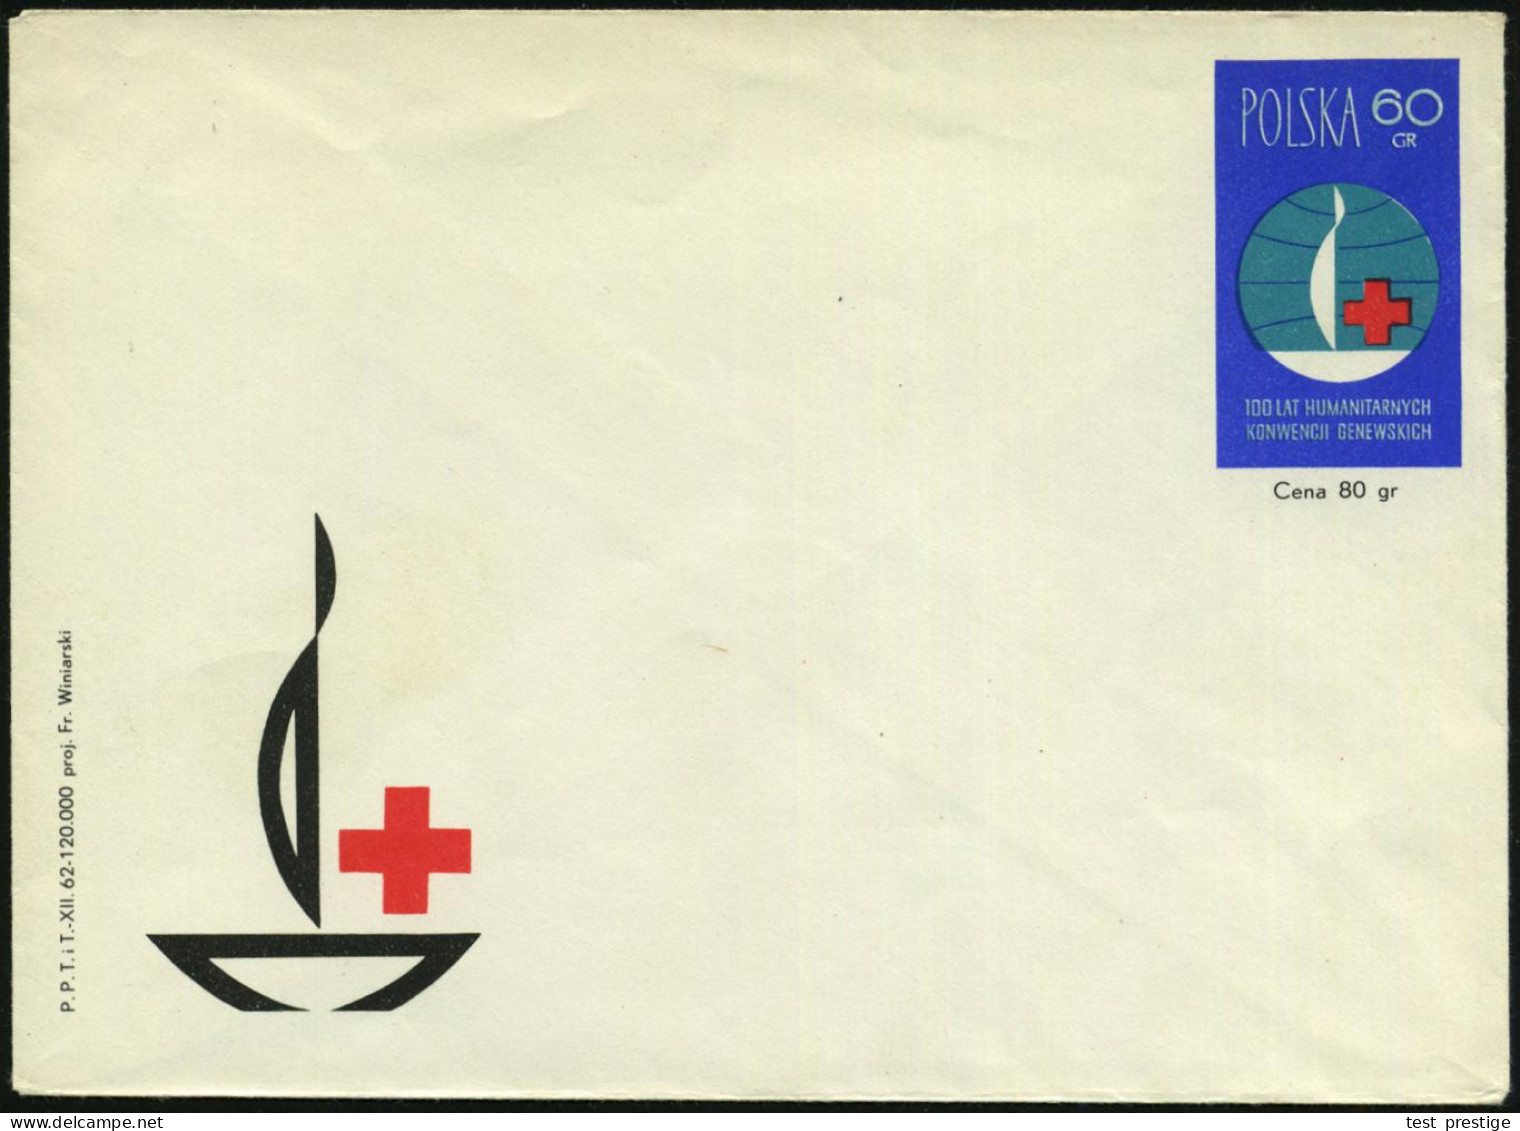 POLEN 1962 40 Gr. Sonder-P U. 60 Gr. Sonder-U: 100 Jahre Genfer Konvention (Rotkreuz-Flammenschale) Je Ungebr., 2 Belege - Red Cross